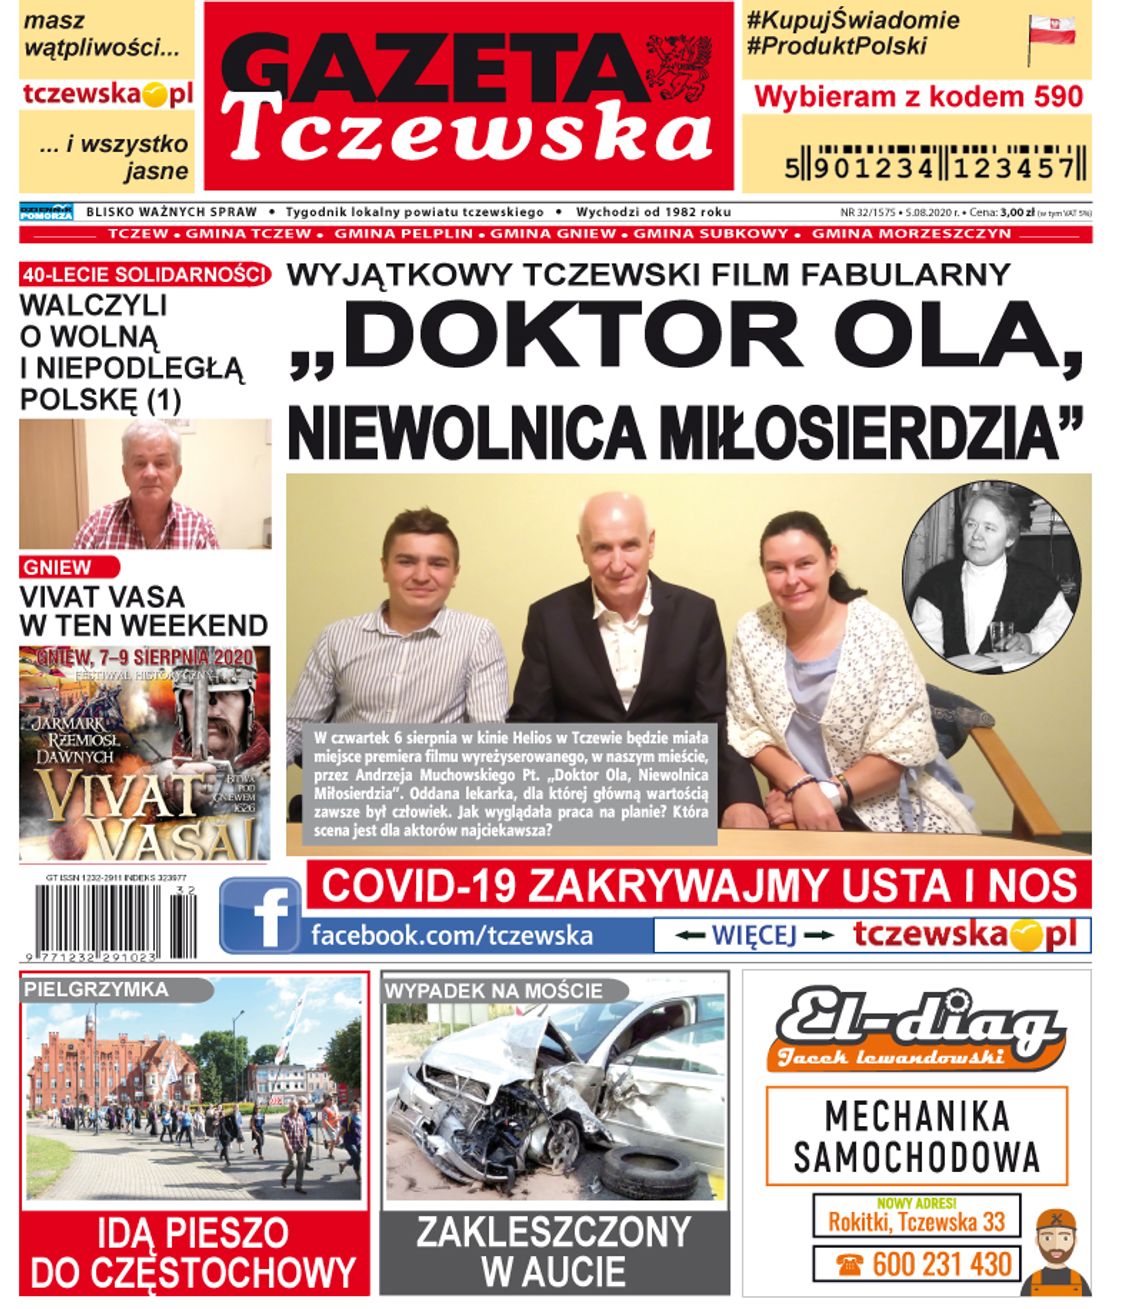 Najnowszy numer tygodnika Gazety Tczewskiej już w kioskach. A w środku…